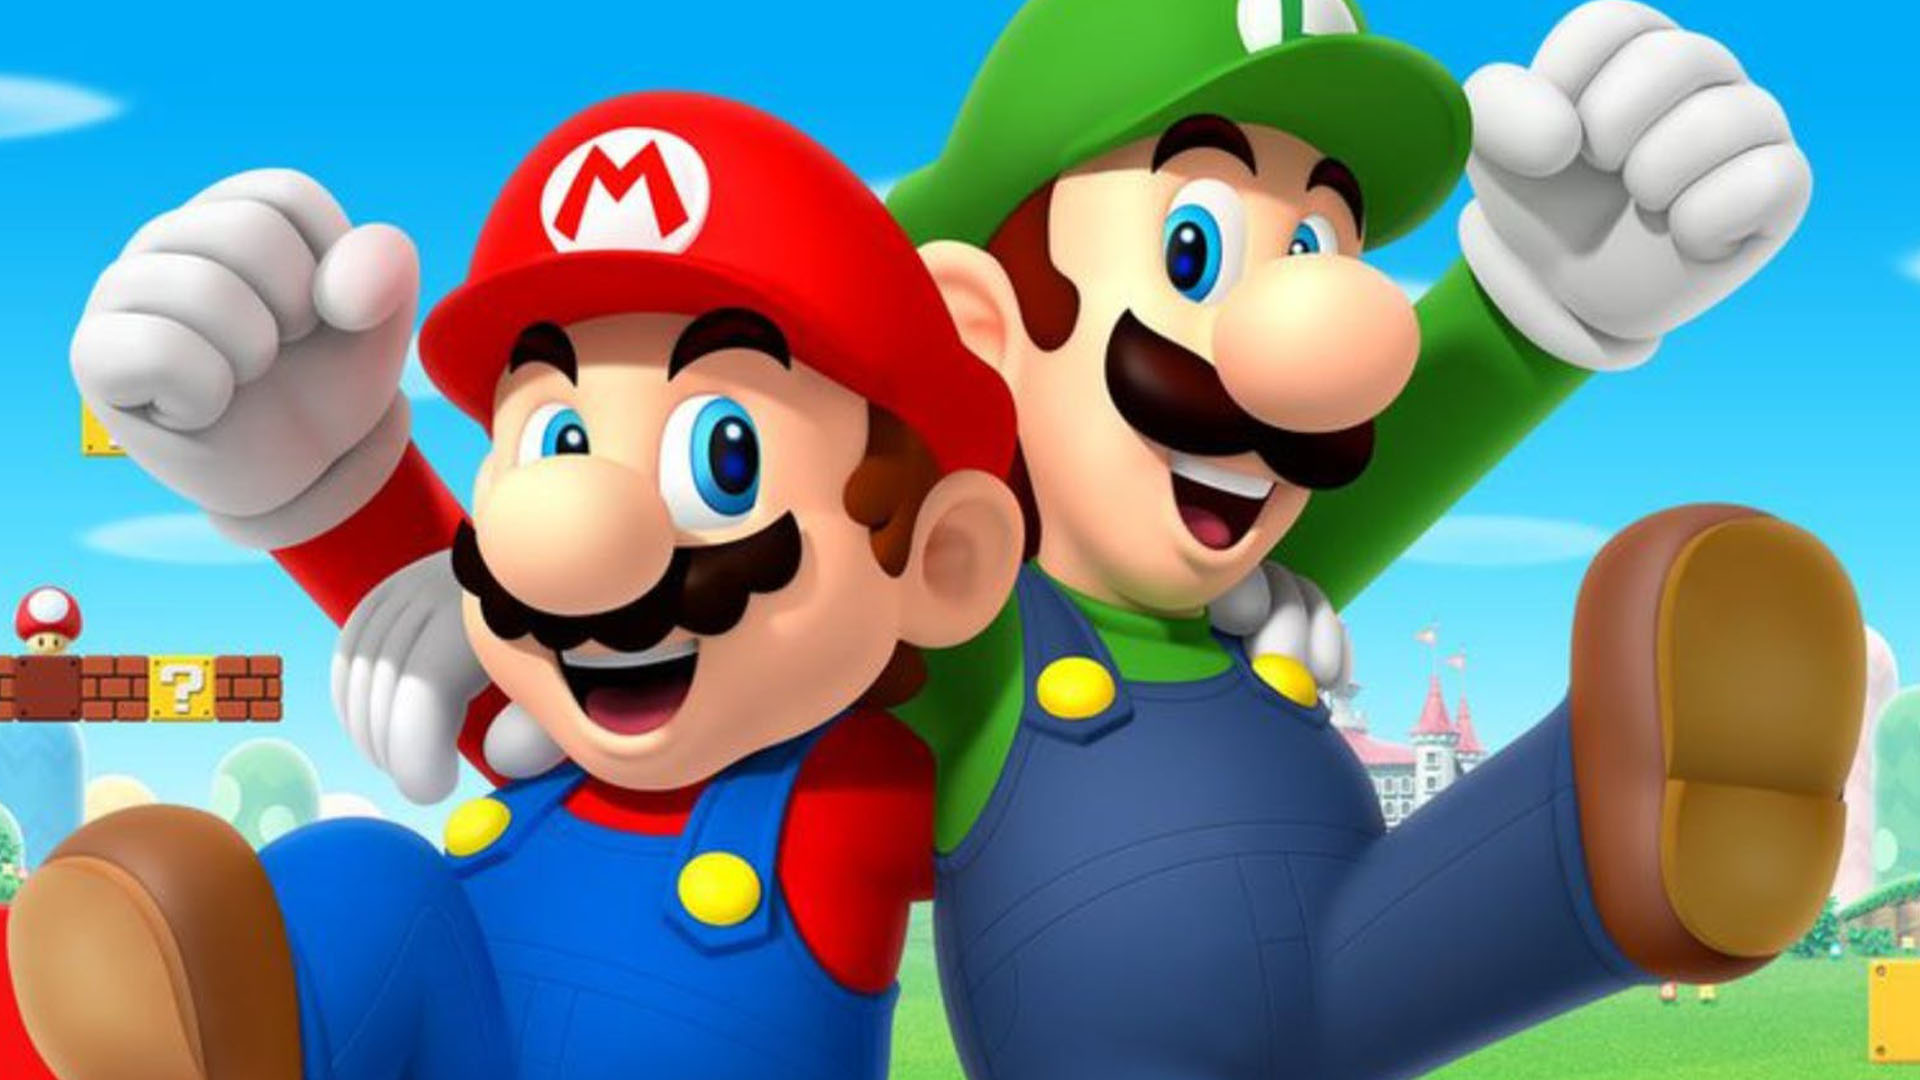 Mario and Luigi 